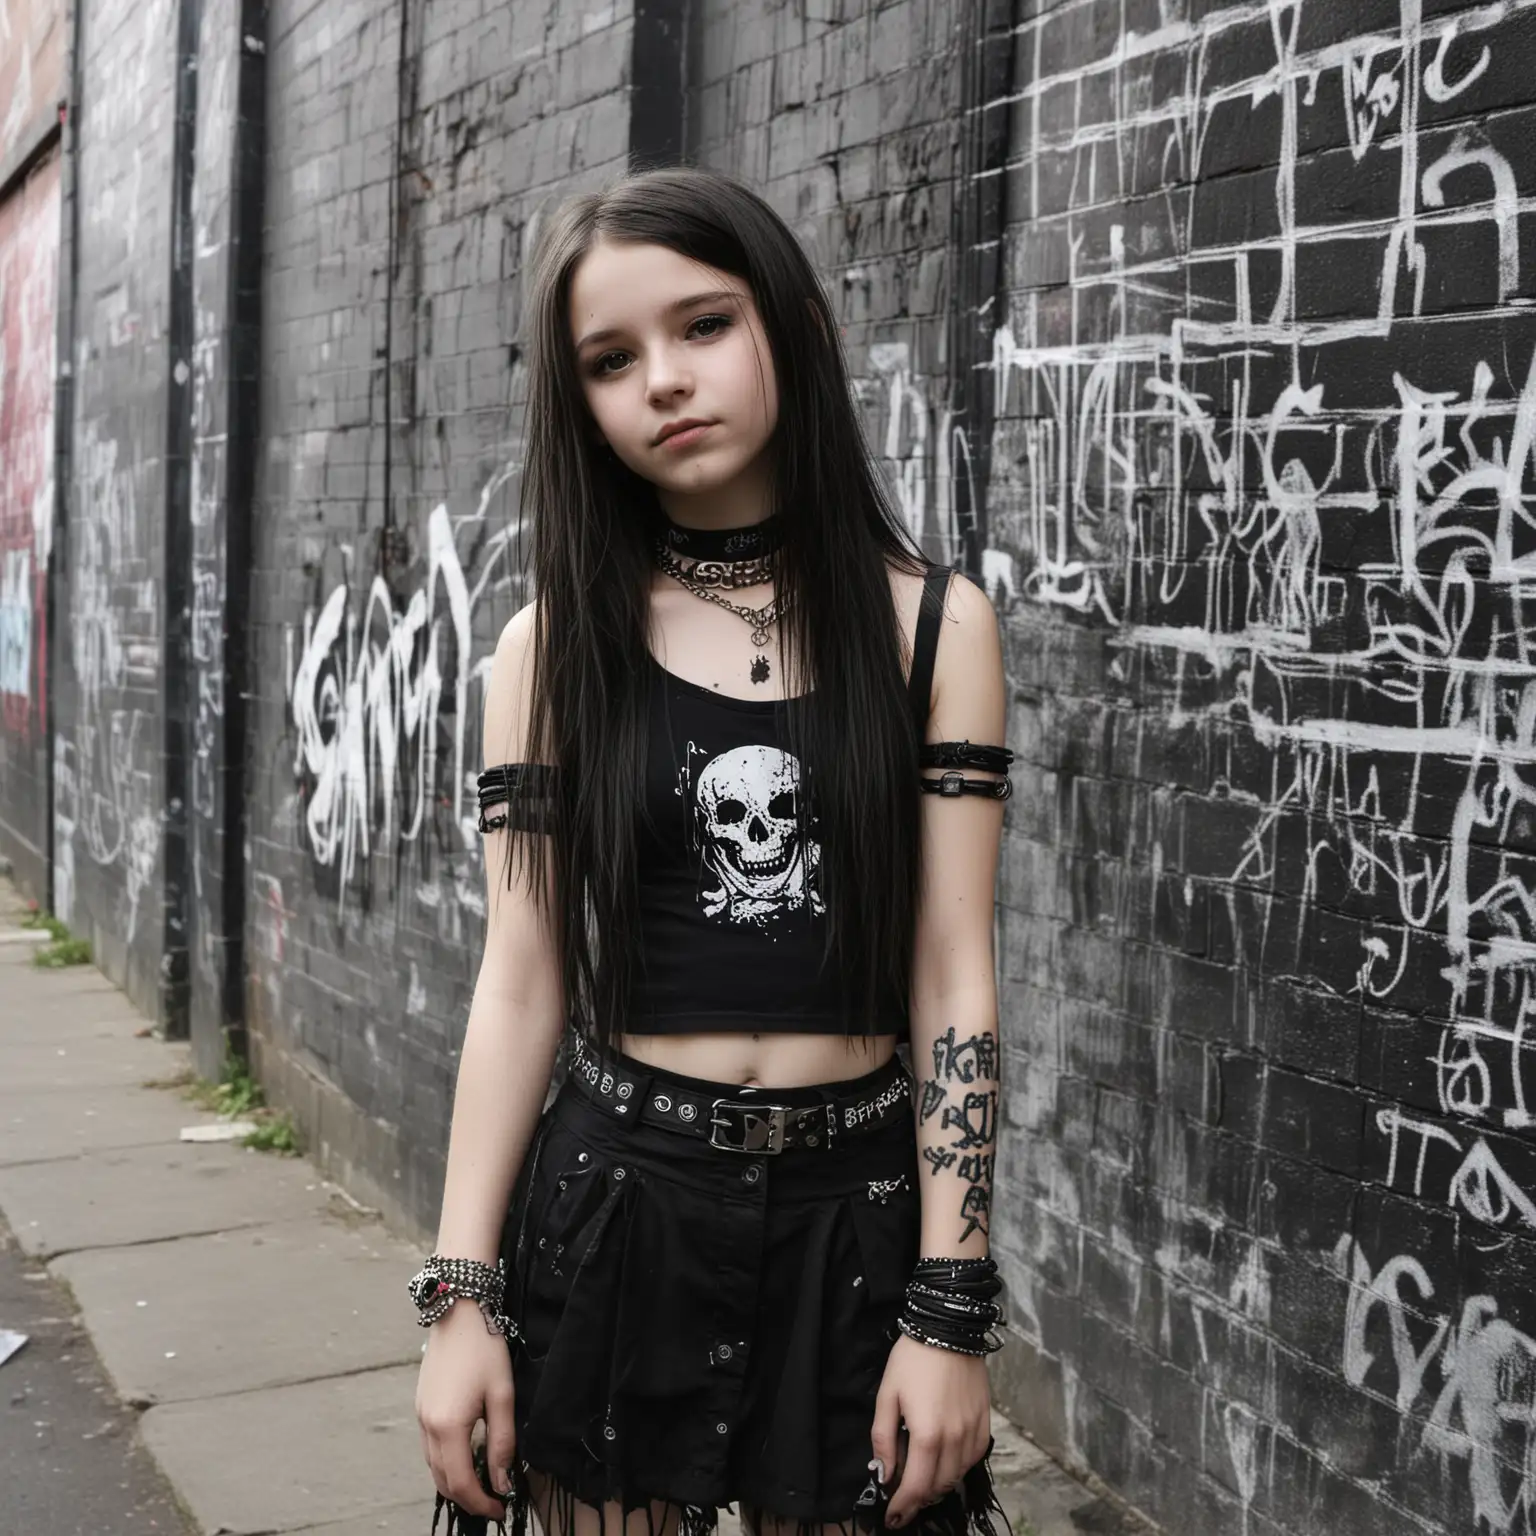 Goth-Teenage-Girl-in-Urban-Graffiti-Scene